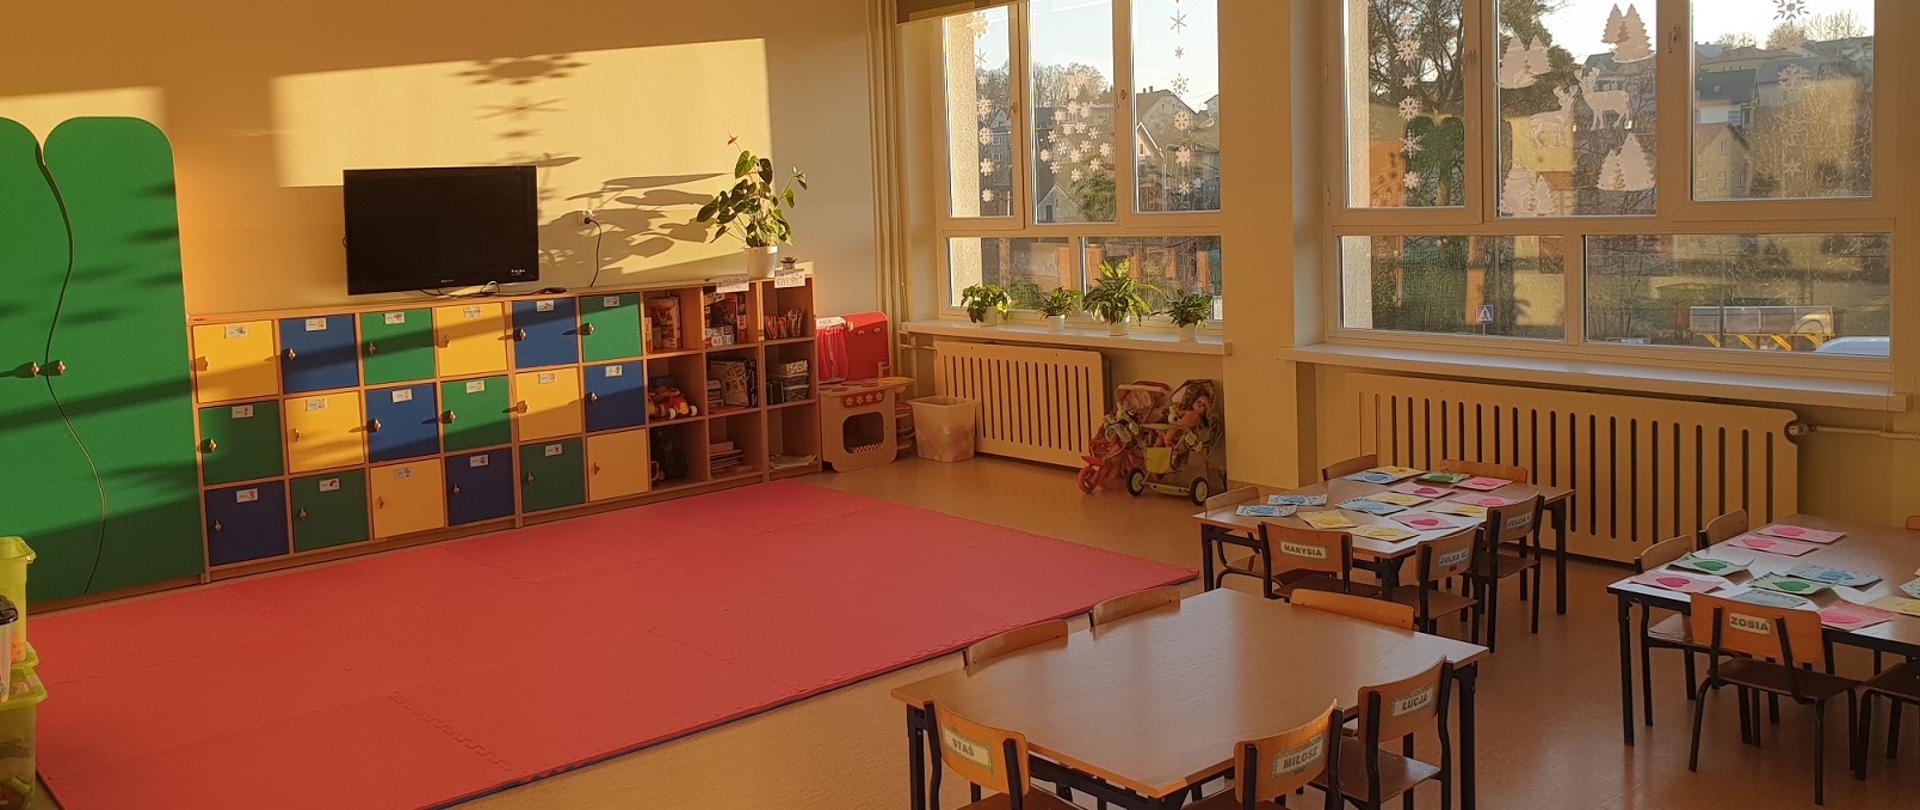 Jedna z dwóch nowych sal przedszkola w Zespole Szkolno-Przedszkolnym w Kończycach Wielkich. Stoją ławki i krzesła, na podłodze mata, z tyłu meble, z boku okno